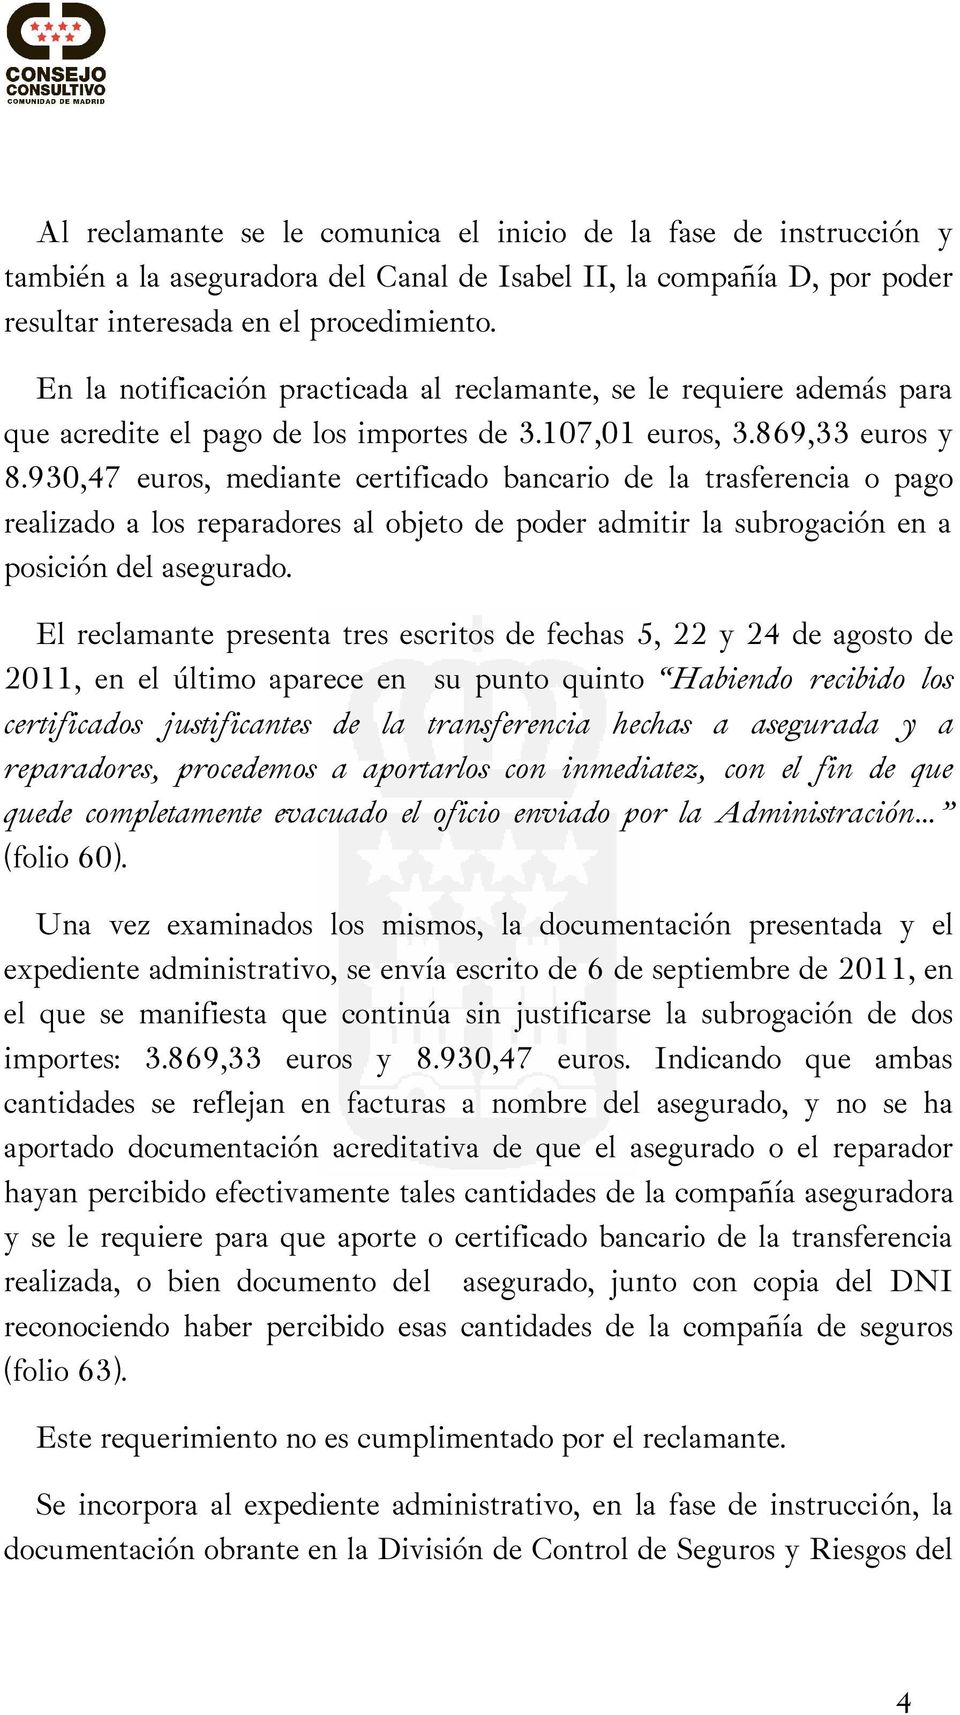 930,47 euros, mediante certificado bancario de la trasferencia o pago realizado a los reparadores al objeto de poder admitir la subrogación en a posición del asegurado.